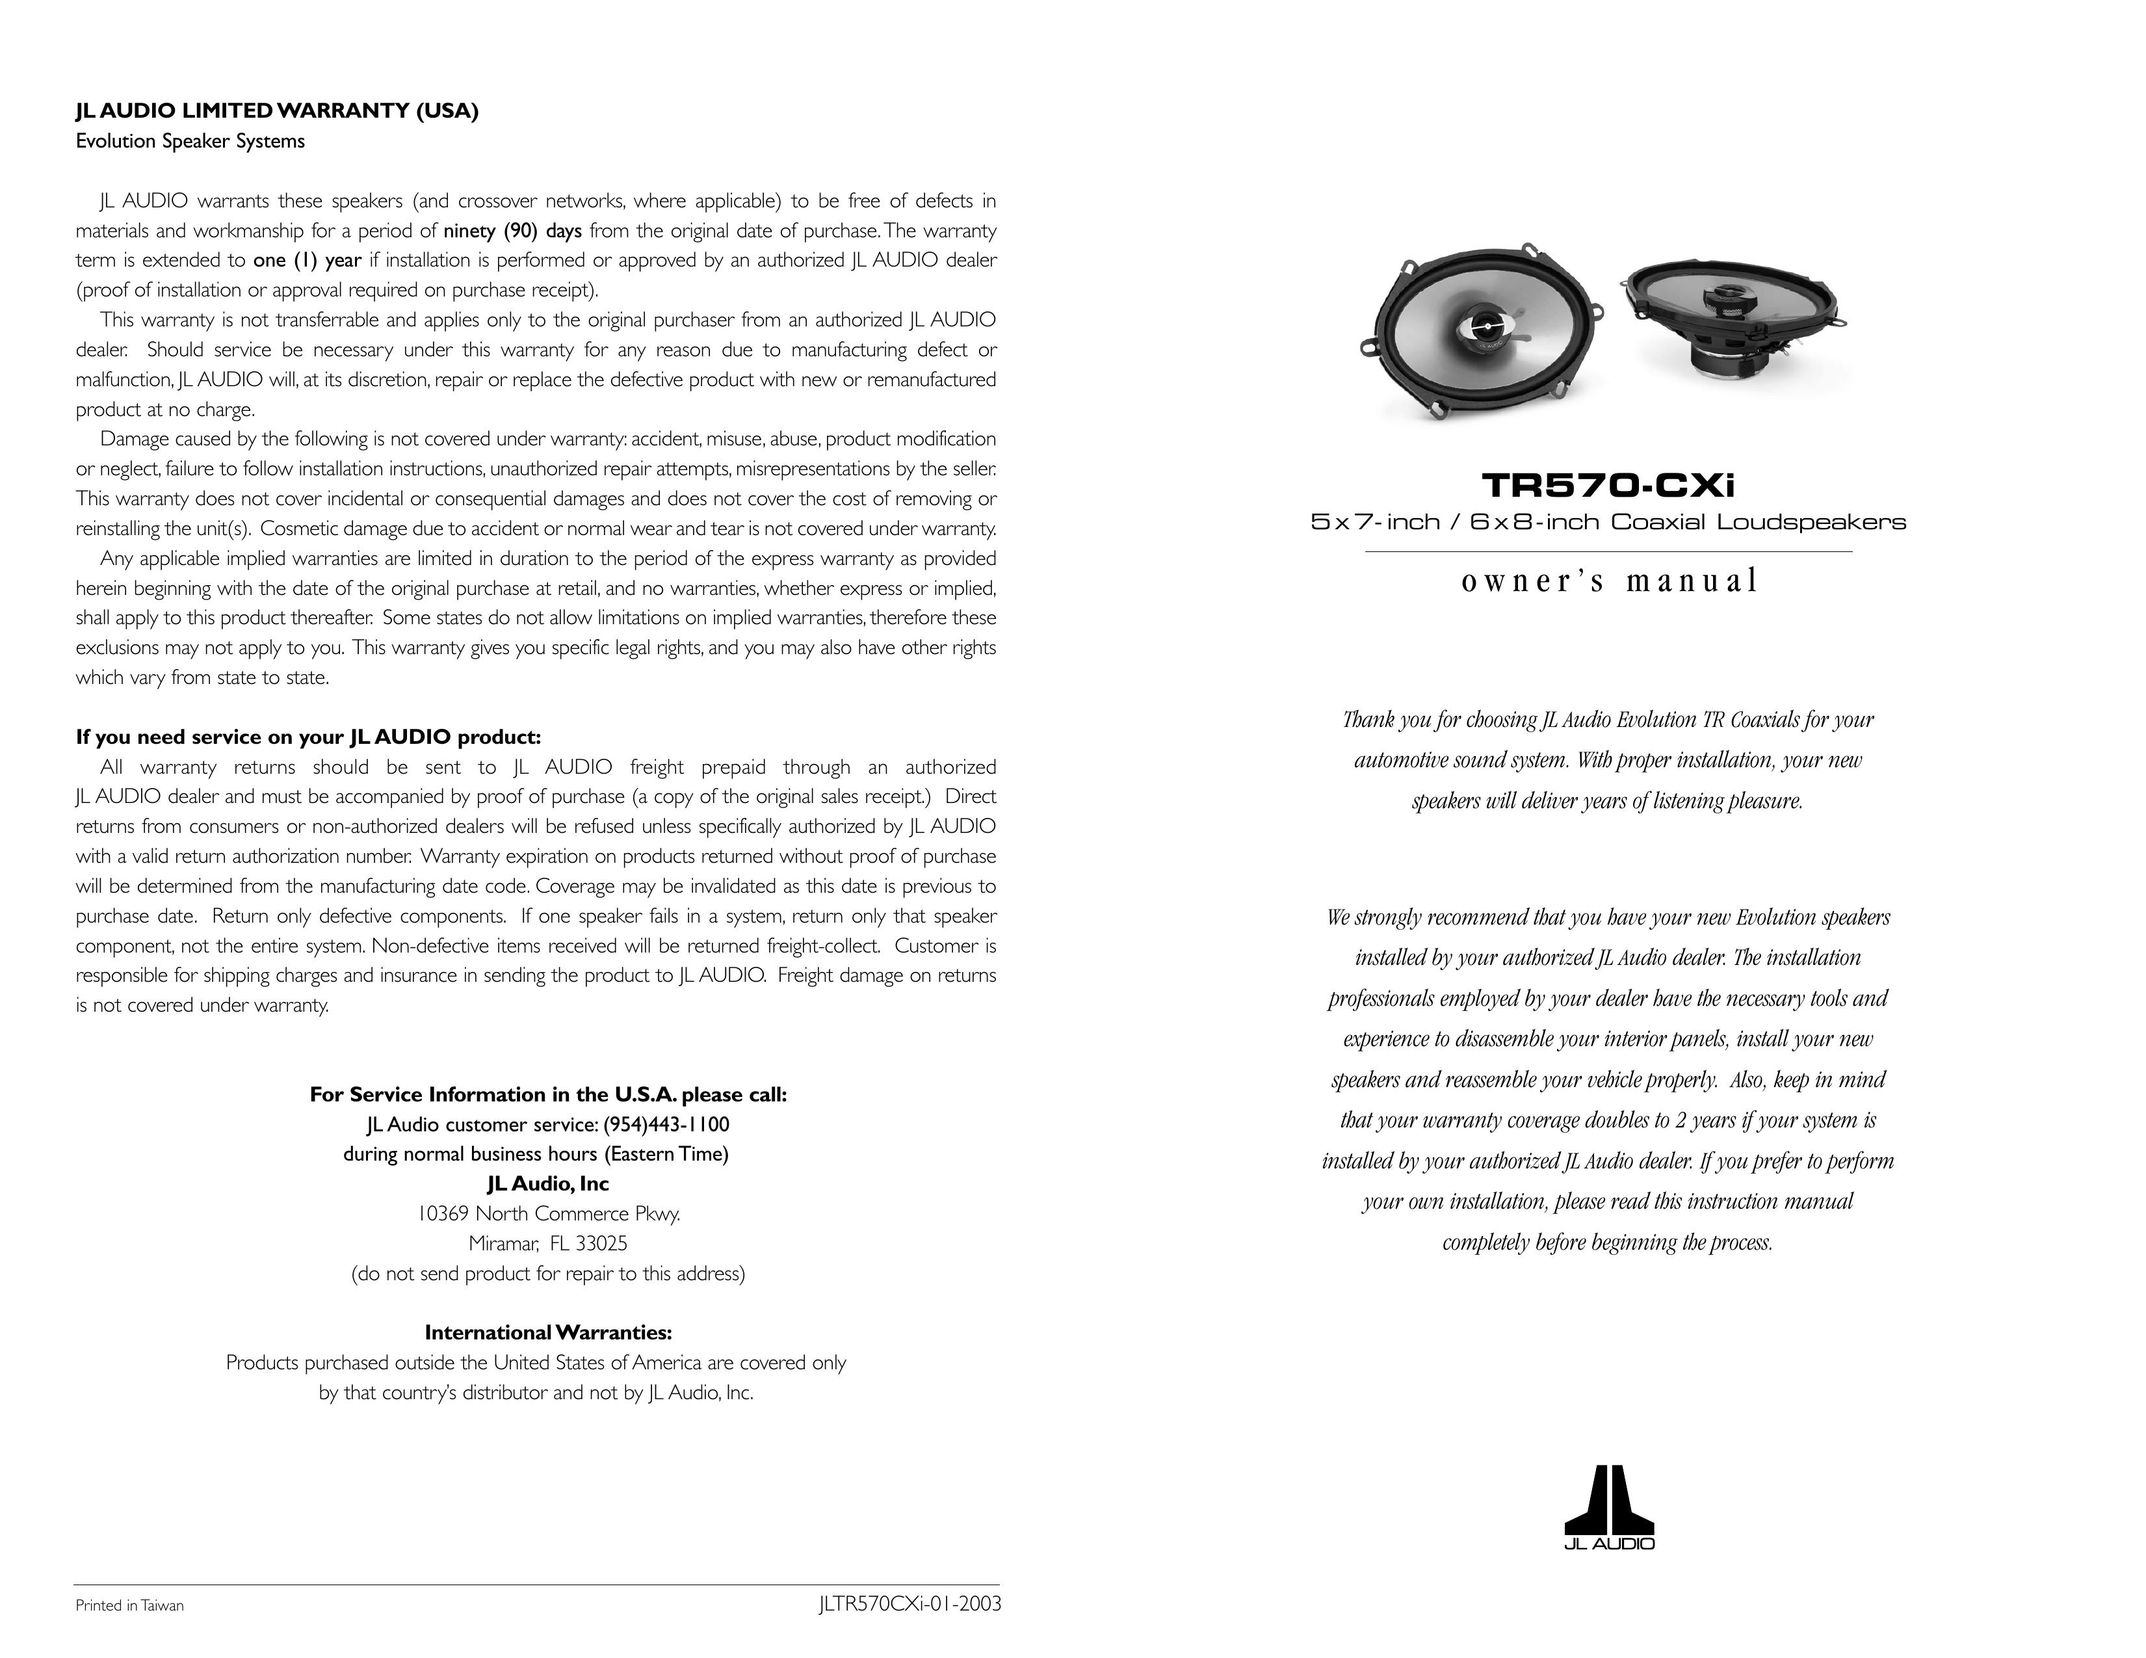 DreamGEAR TR570-CXI Speaker User Manual